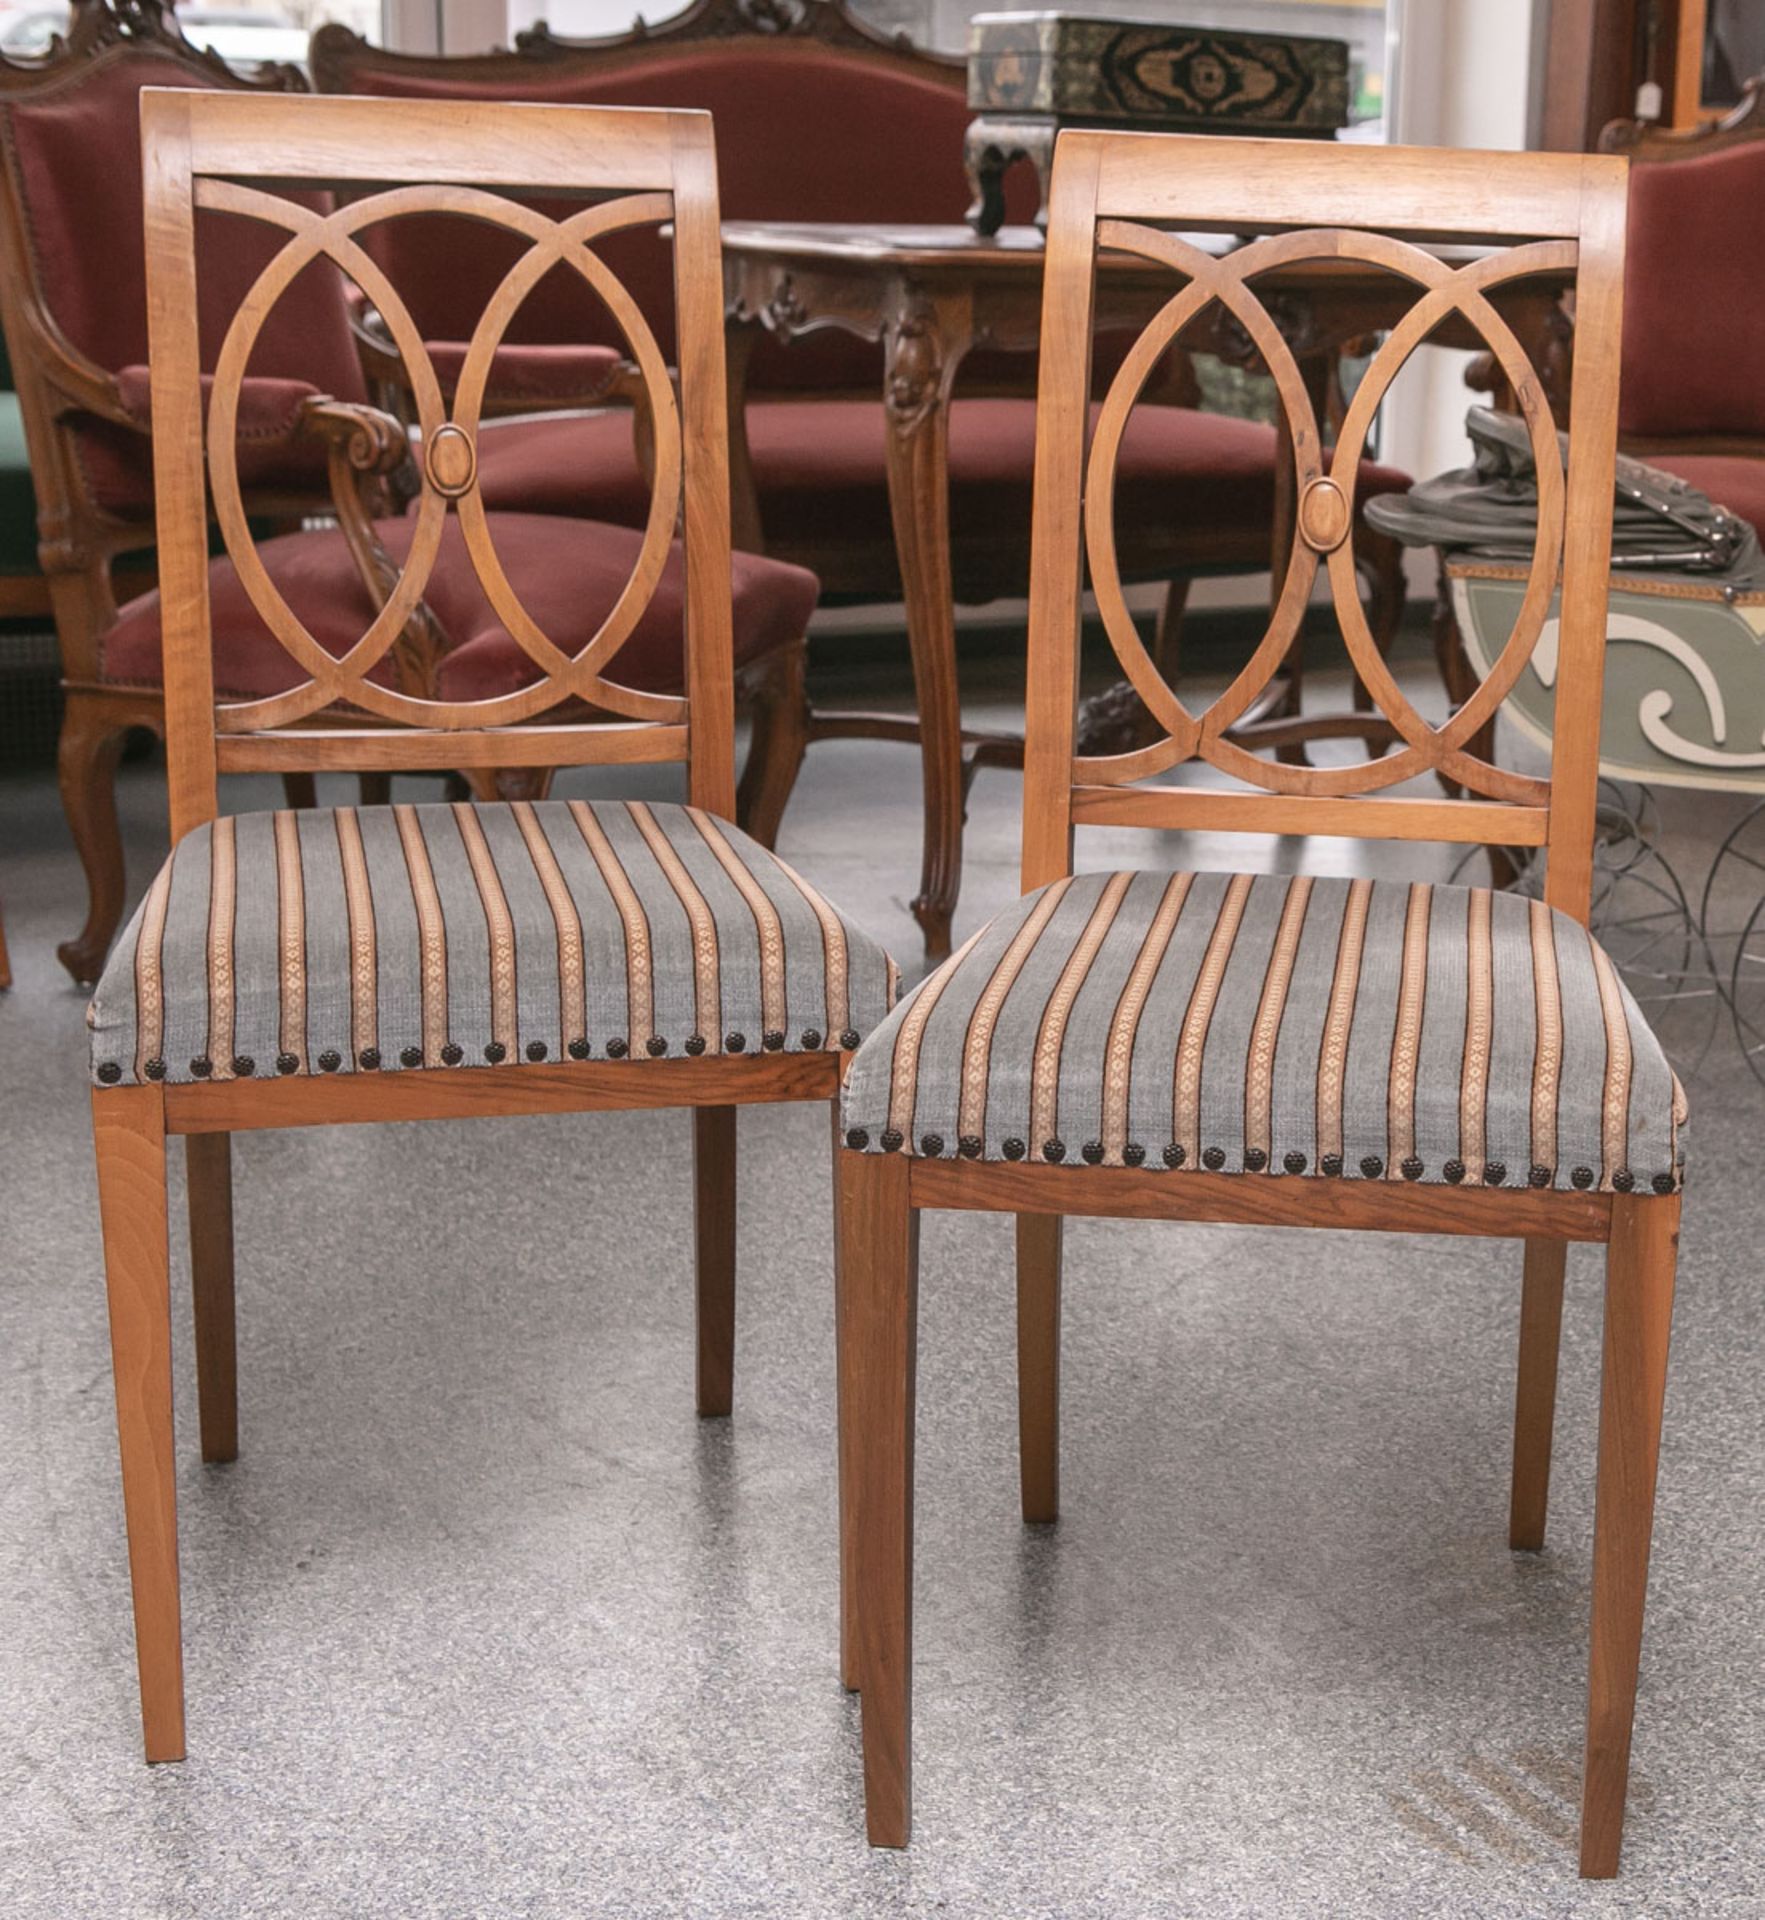 2 Stühle aus der Biedermeierzeit (1820/30), Nußholz massiv, Sitz gepolstert, Sitzhöhe ca. 45 cm.